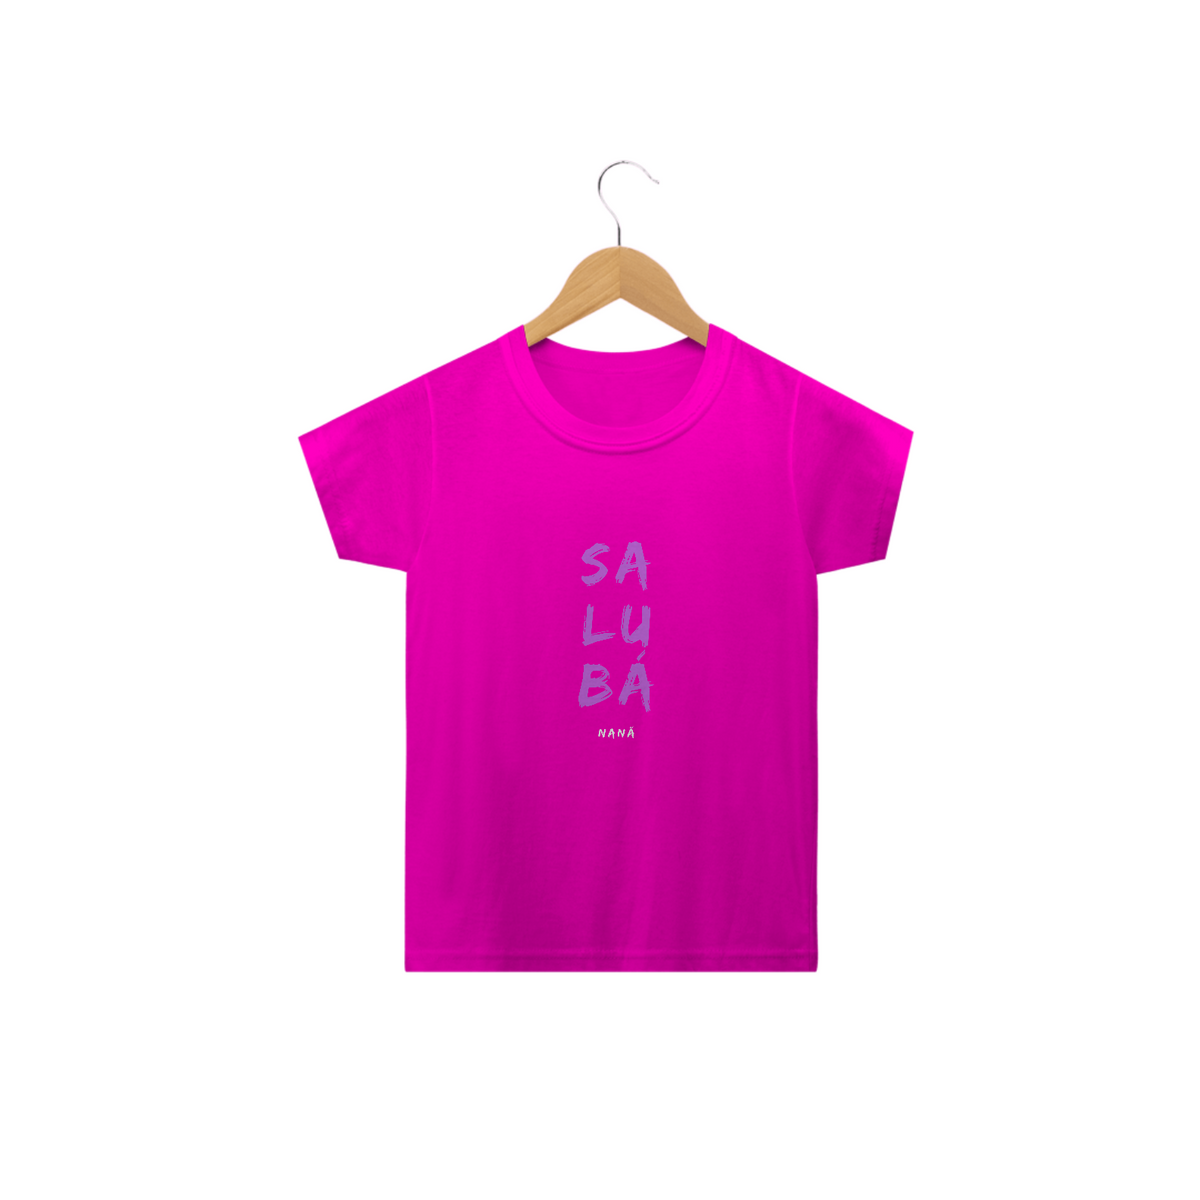 Nome do produto: Camiseta Infantil Nàná Saudação Sálùba Nàná Rosa 100% Algodão Fio 24.1, 145g costura simples e gola ribana